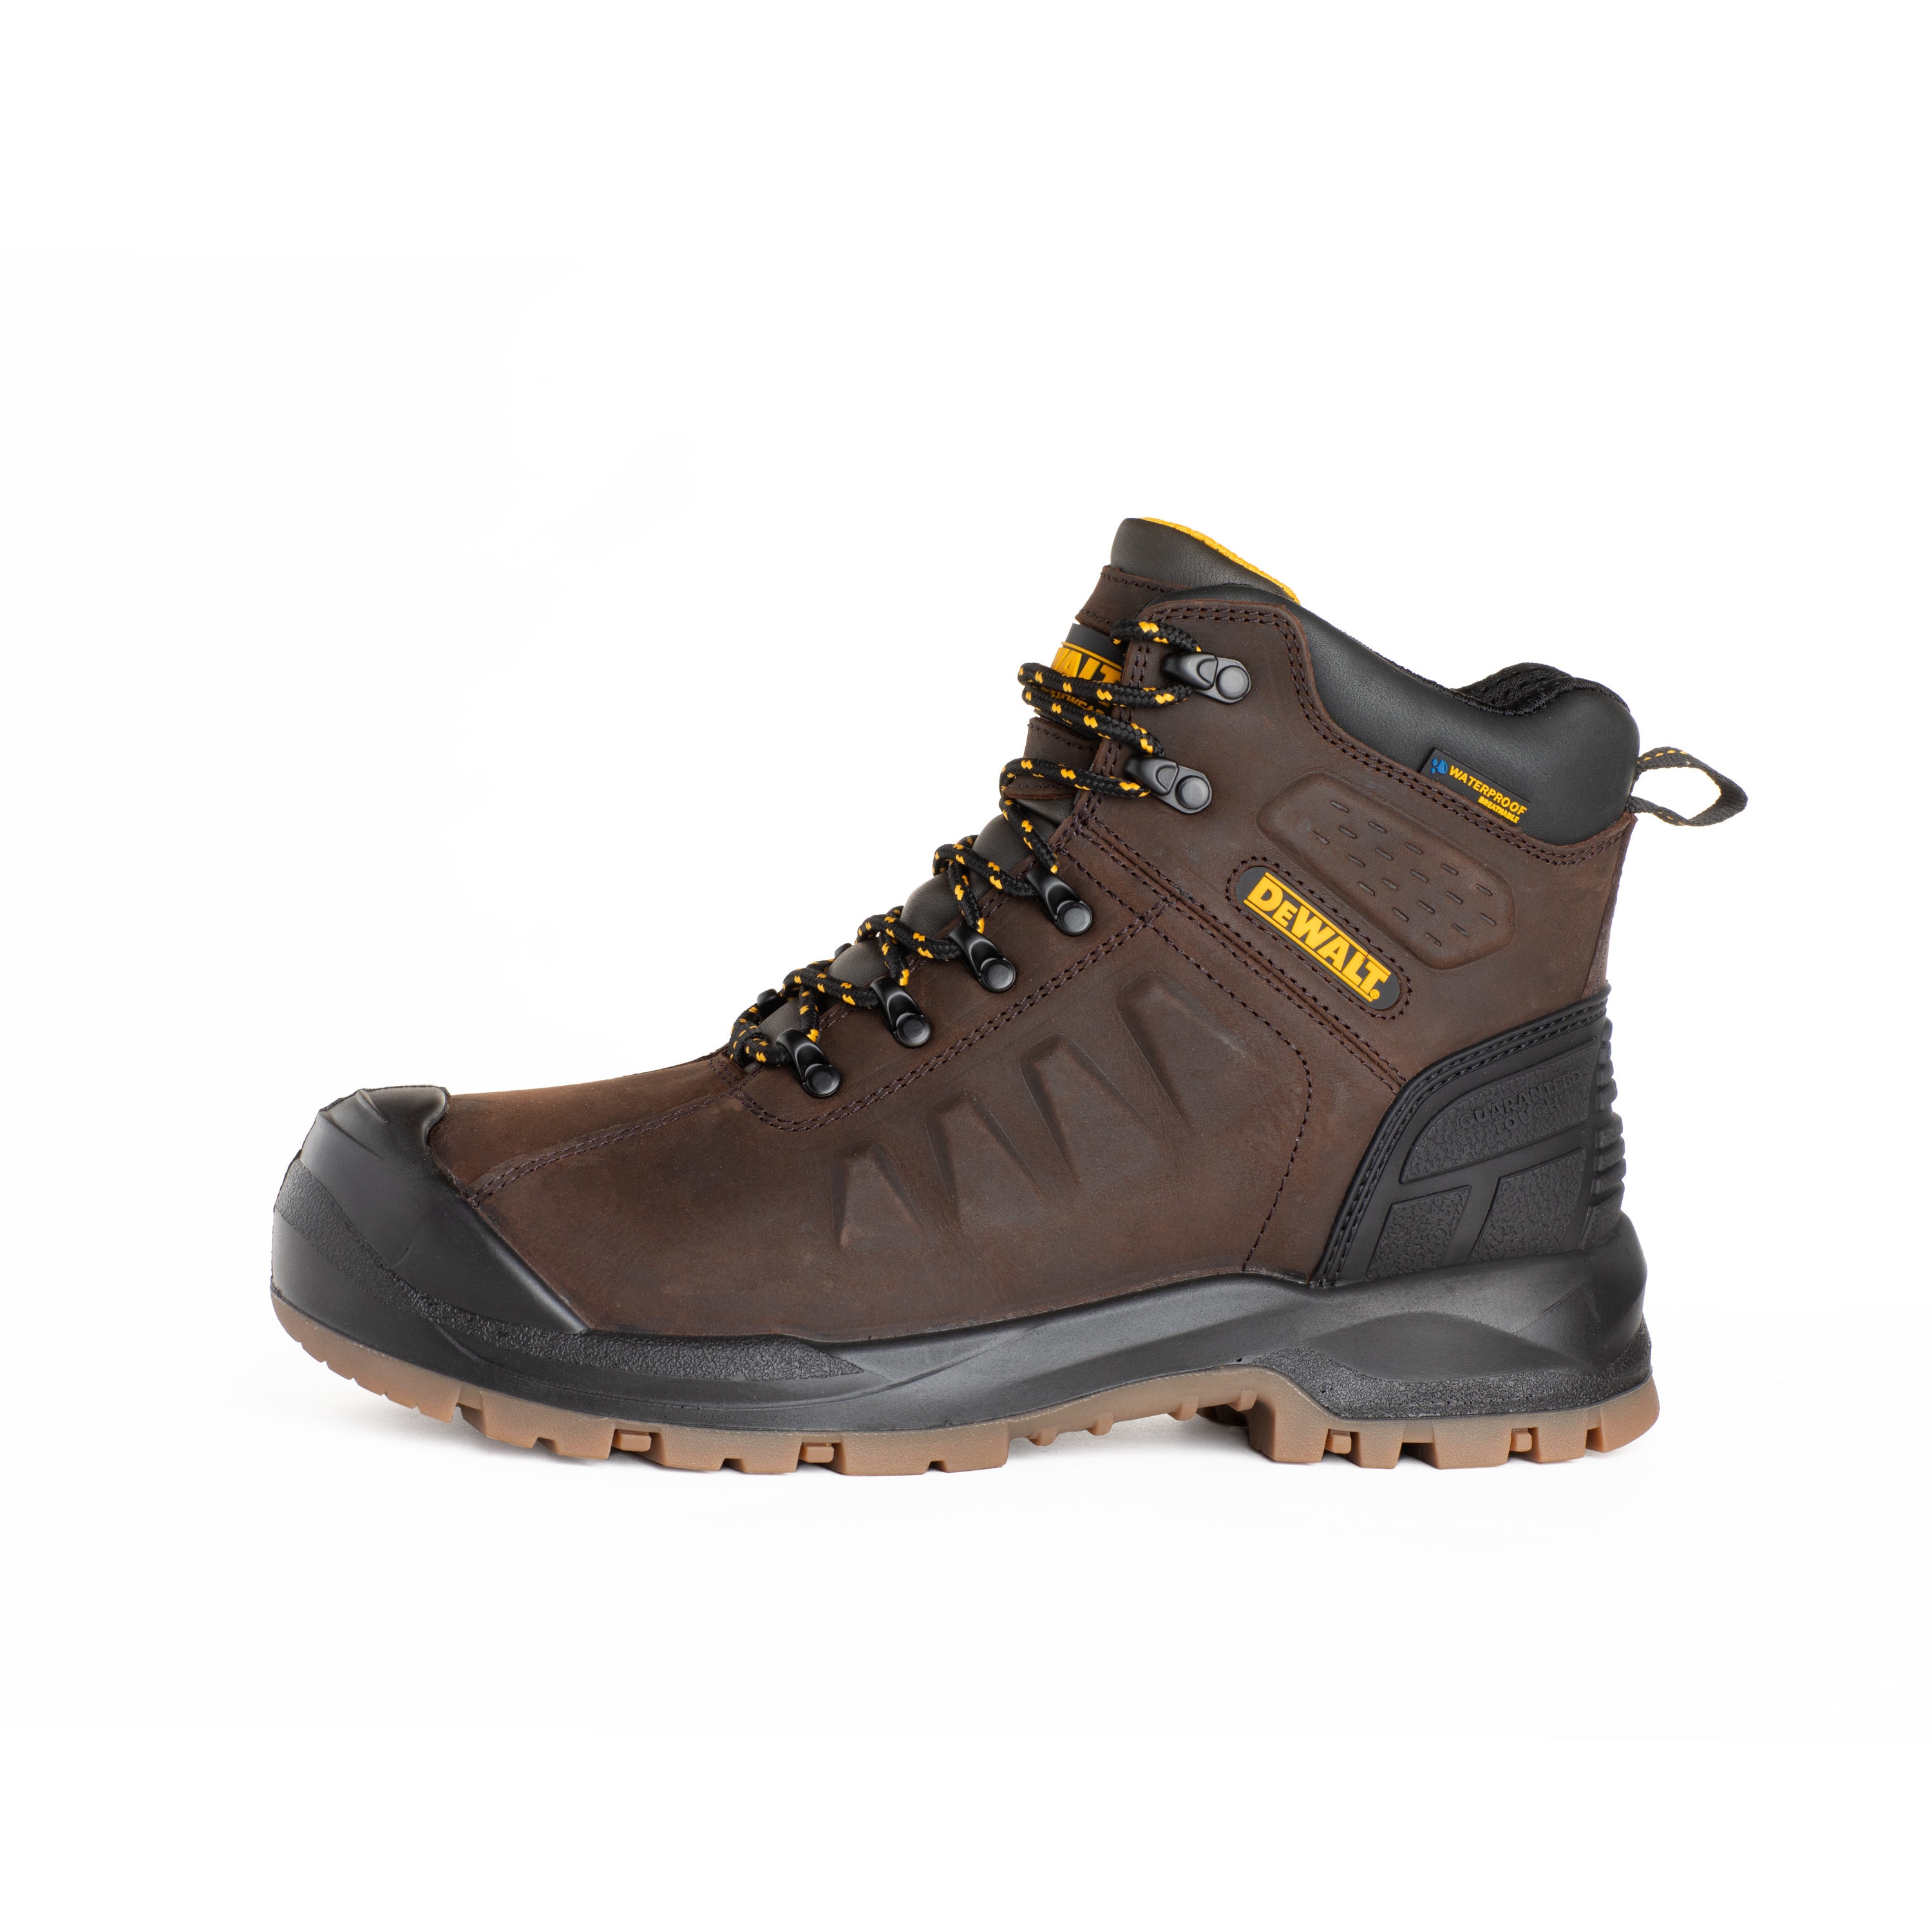 DEWALT Mens Waterproof Steel Toe Work Boots Size: 10 Medium in the Footwear department at Lowes.com